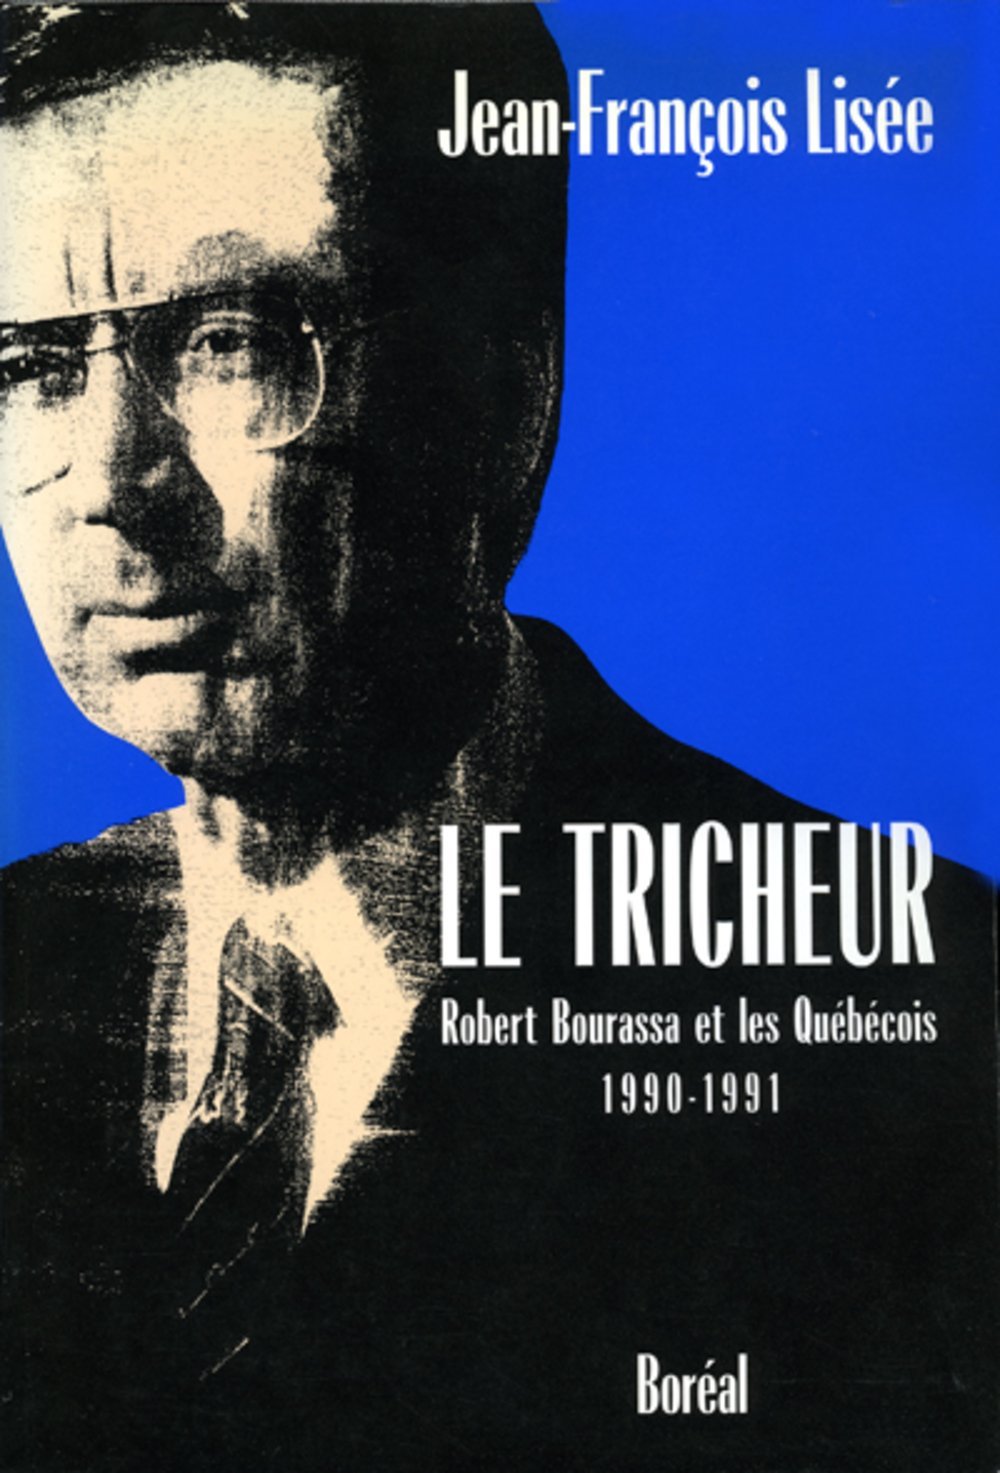 Le tricheur : Robert Bourassa et les Québécois, 1990-1991 / Jean-François Lisée.